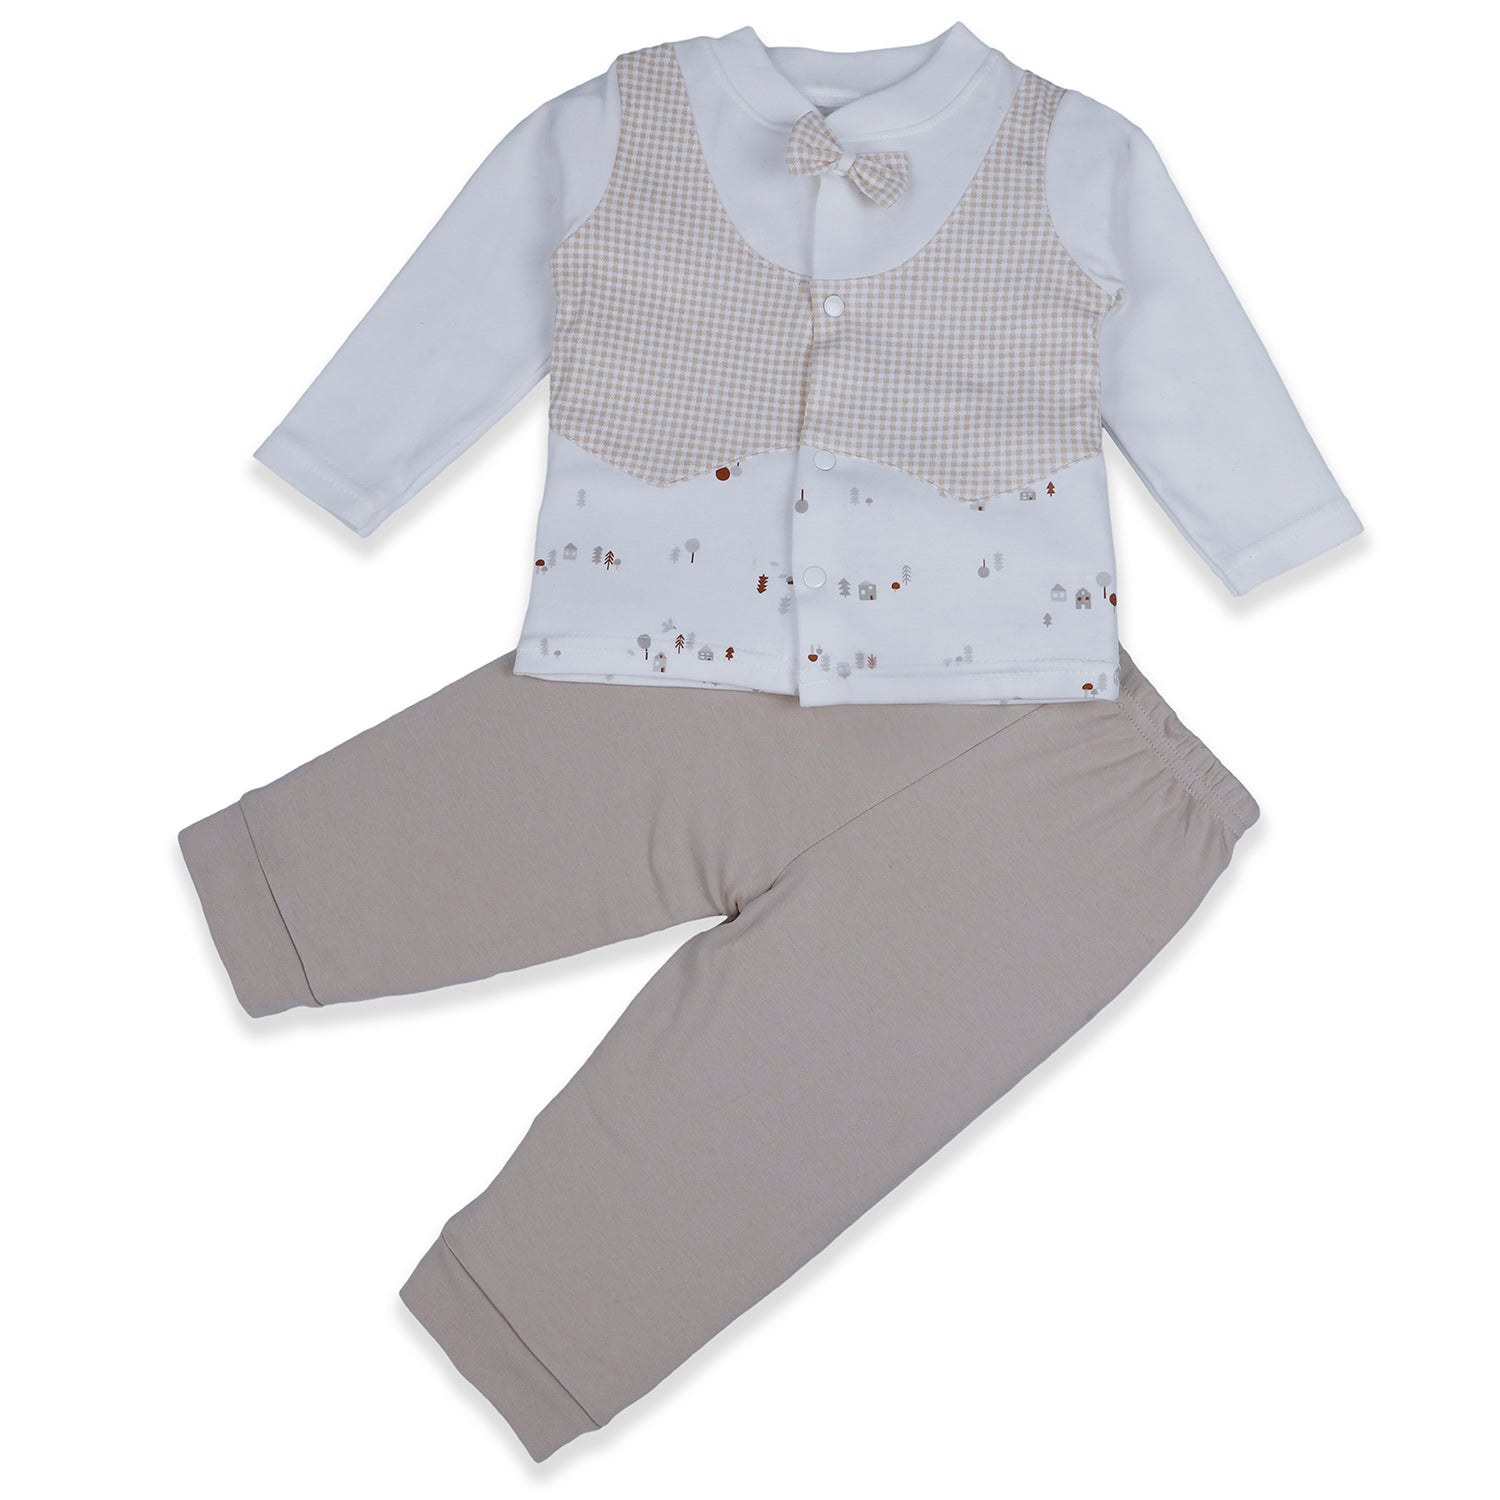 Baby Moo Chequered Gentleman's Long Sleeve 2pcs Baby Suit - Beige - Baby Moo